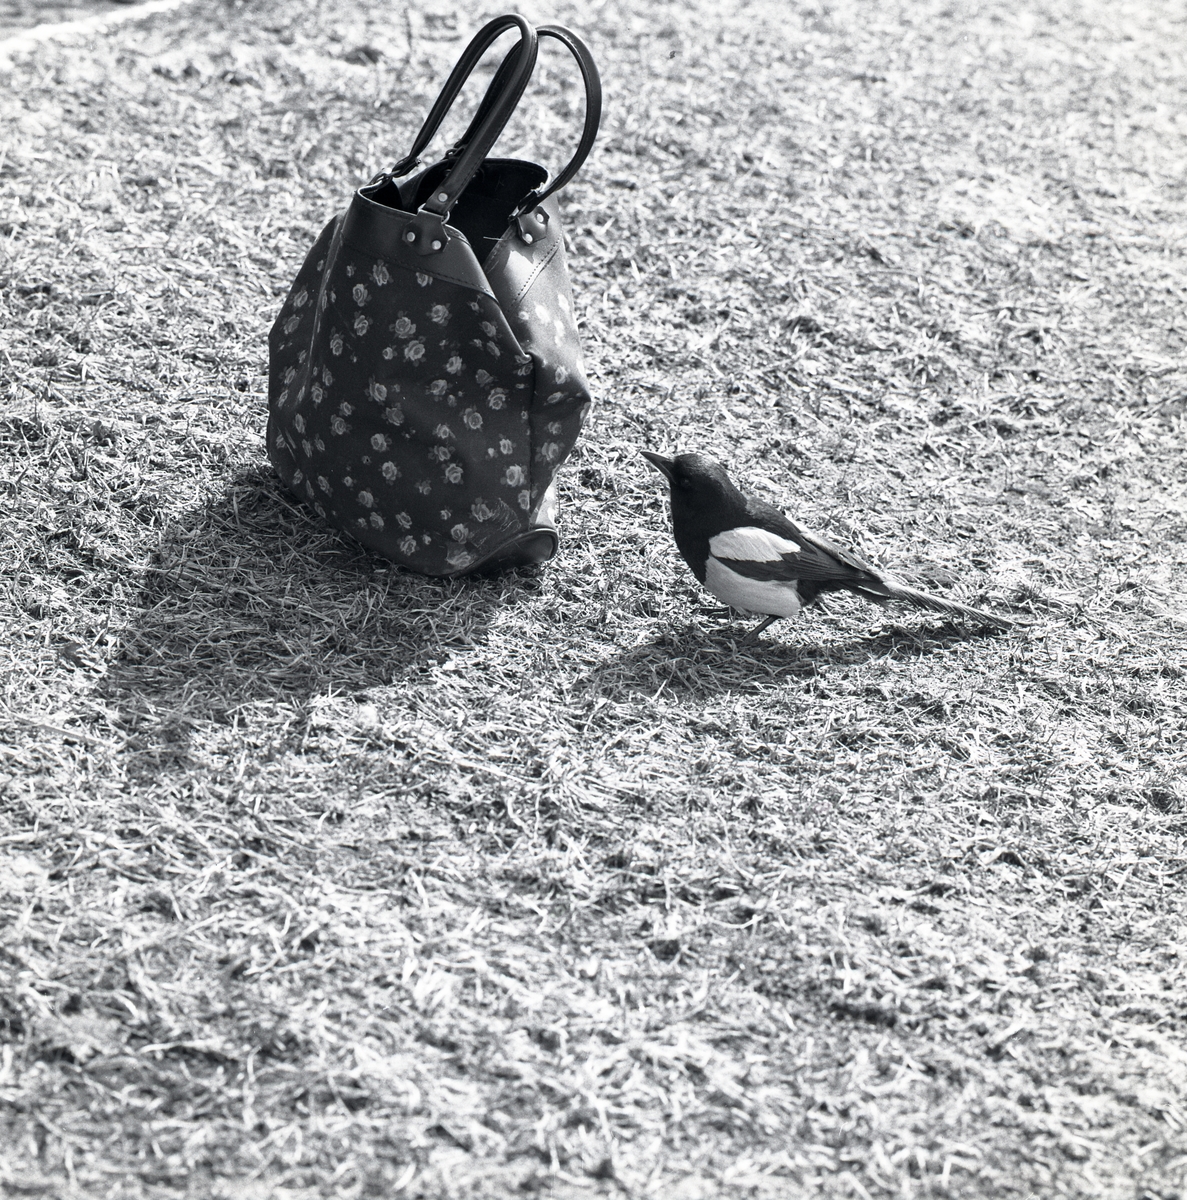 En tam skata sitter på marken vid en väska, våren 1975.